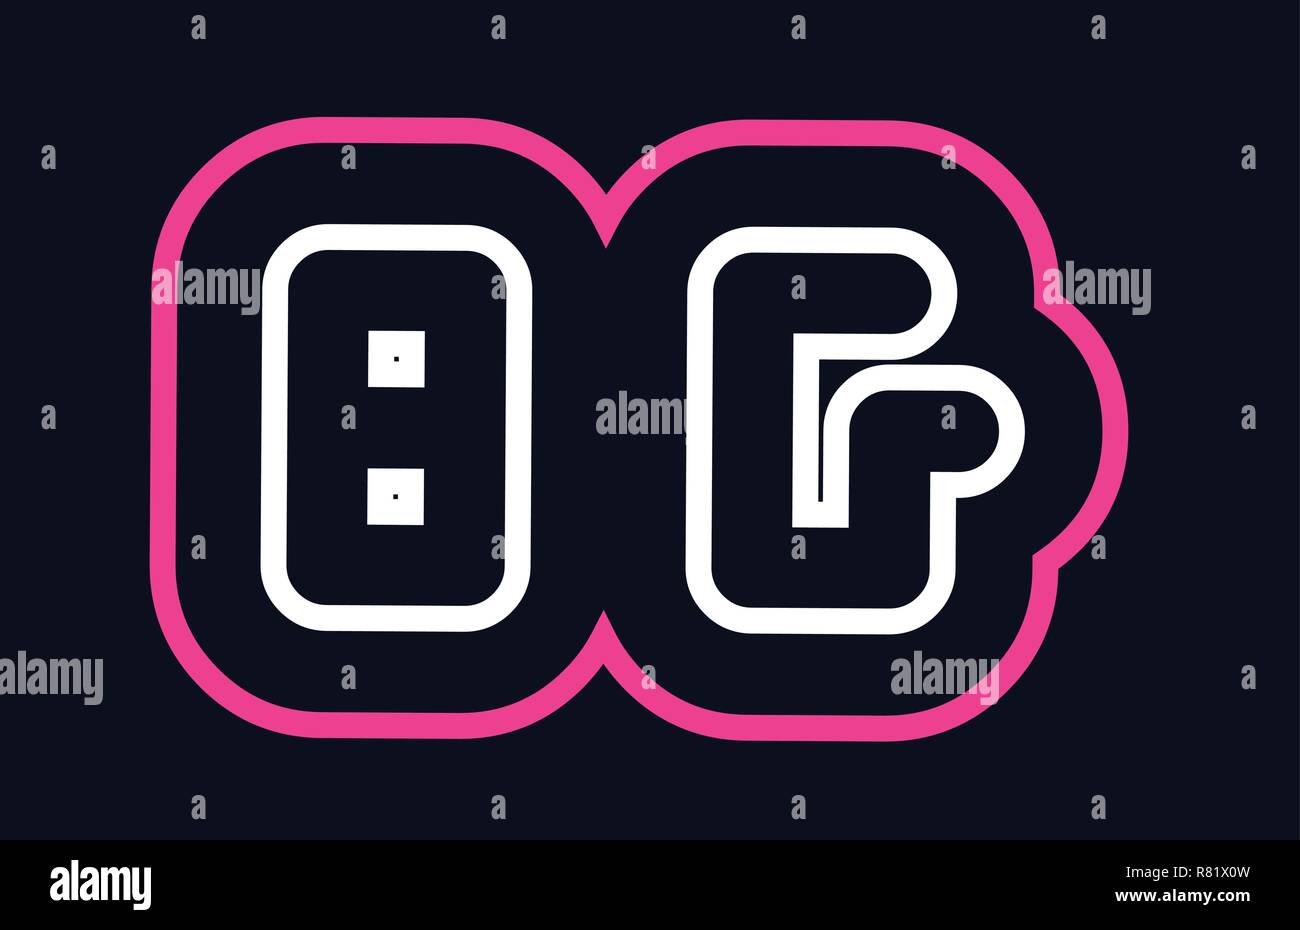 Rosa Weiß Blau alphabet Kombination schreiben bg b g Logo Design geeignet für ein Unternehmen oder ein Geschäft Stock Vektor